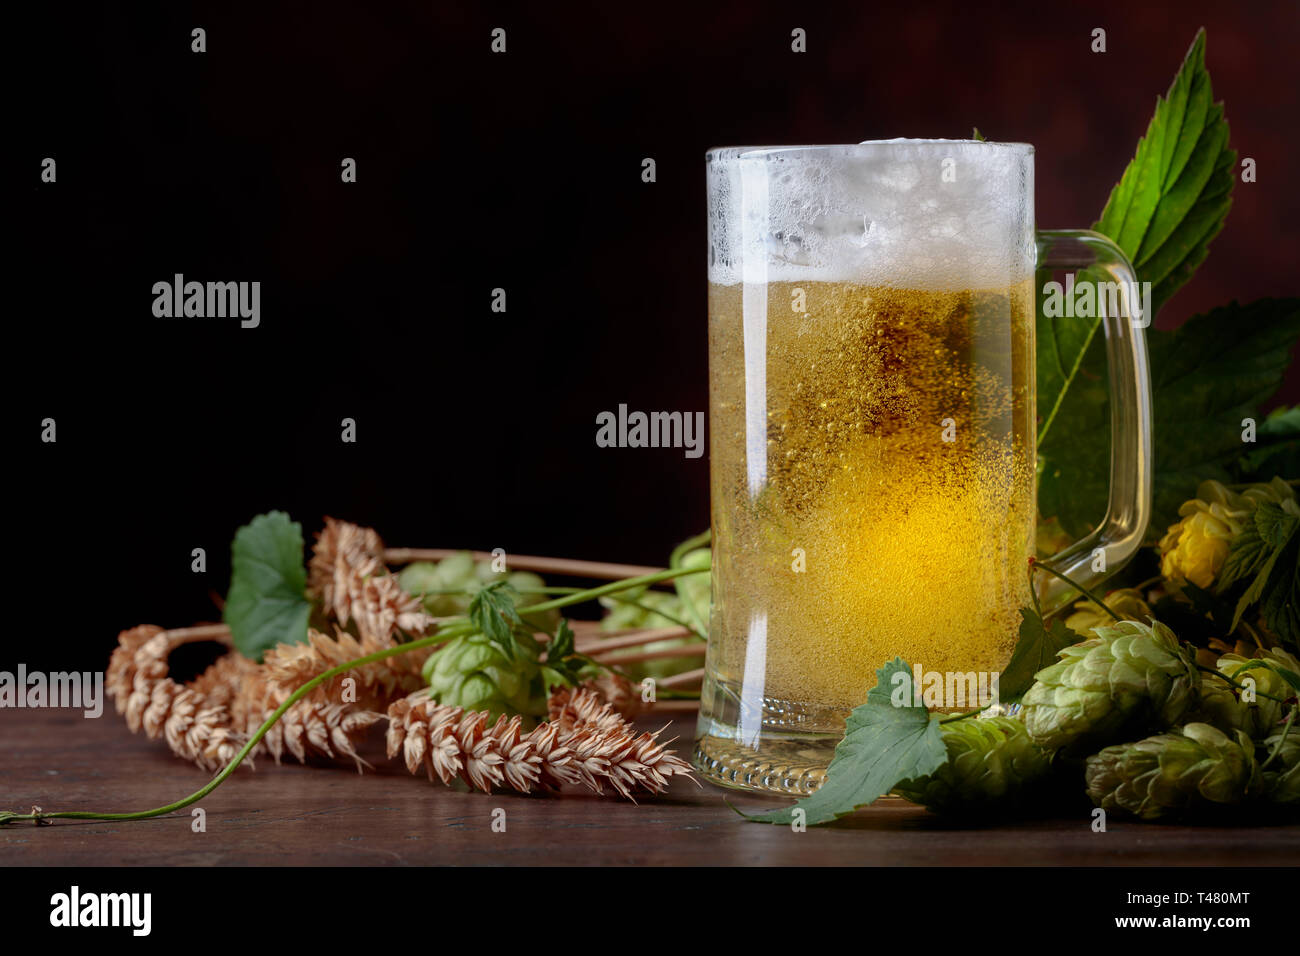 La bière, le grain et le houblon sur une vieille table en bois. Espace libre pour votre texte. Banque D'Images